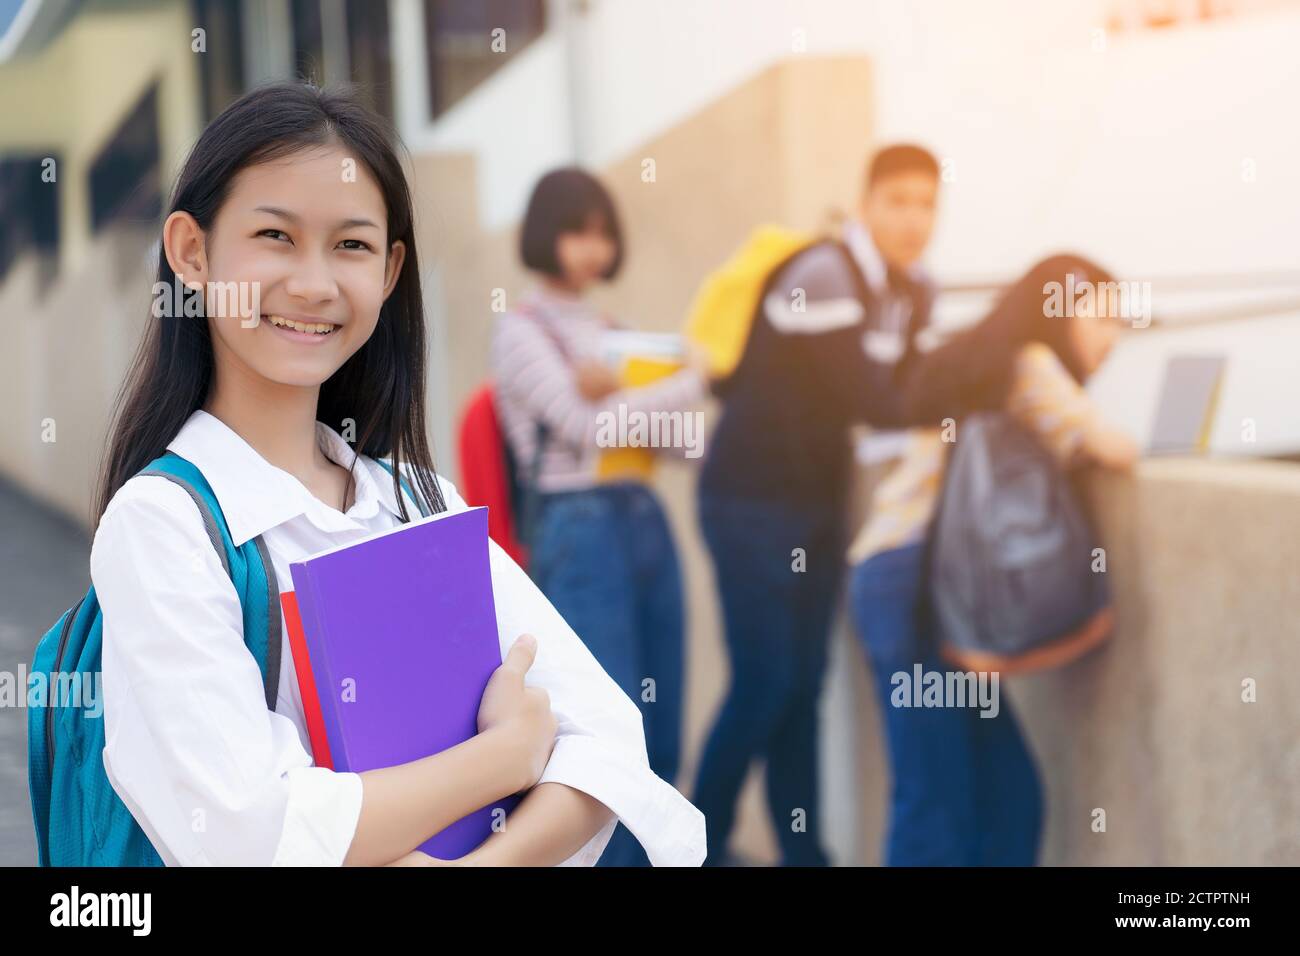 giovane studente adolescente ragazza studente di scuola superiore che porta borsa di studio holding notebook con amici in background Foto Stock